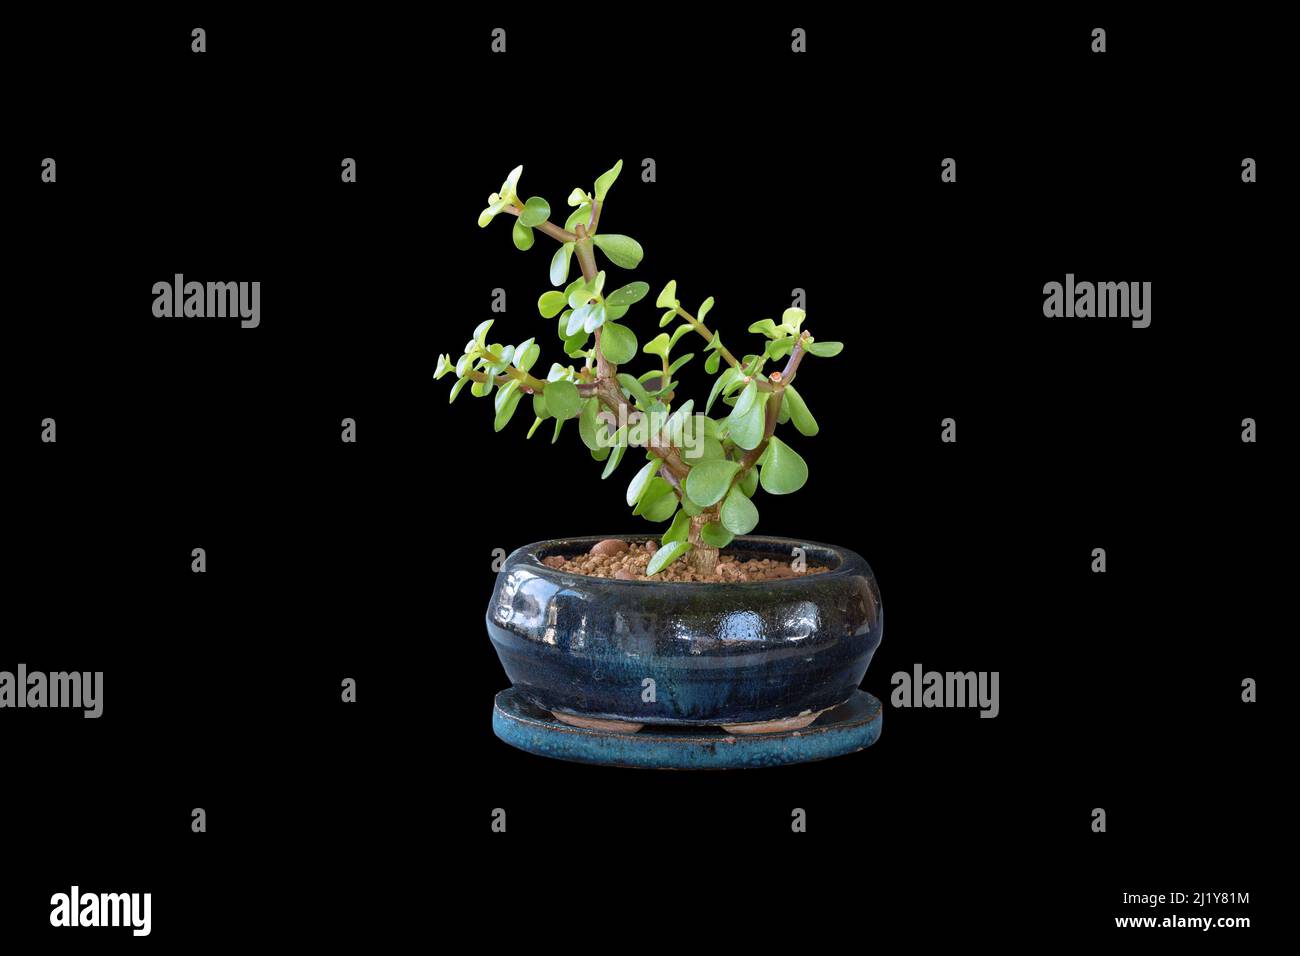 Portulacaria afla bonsai sobre fondo oscuro, el árbol del dinero plantado en una olla de cerámica Foto de stock